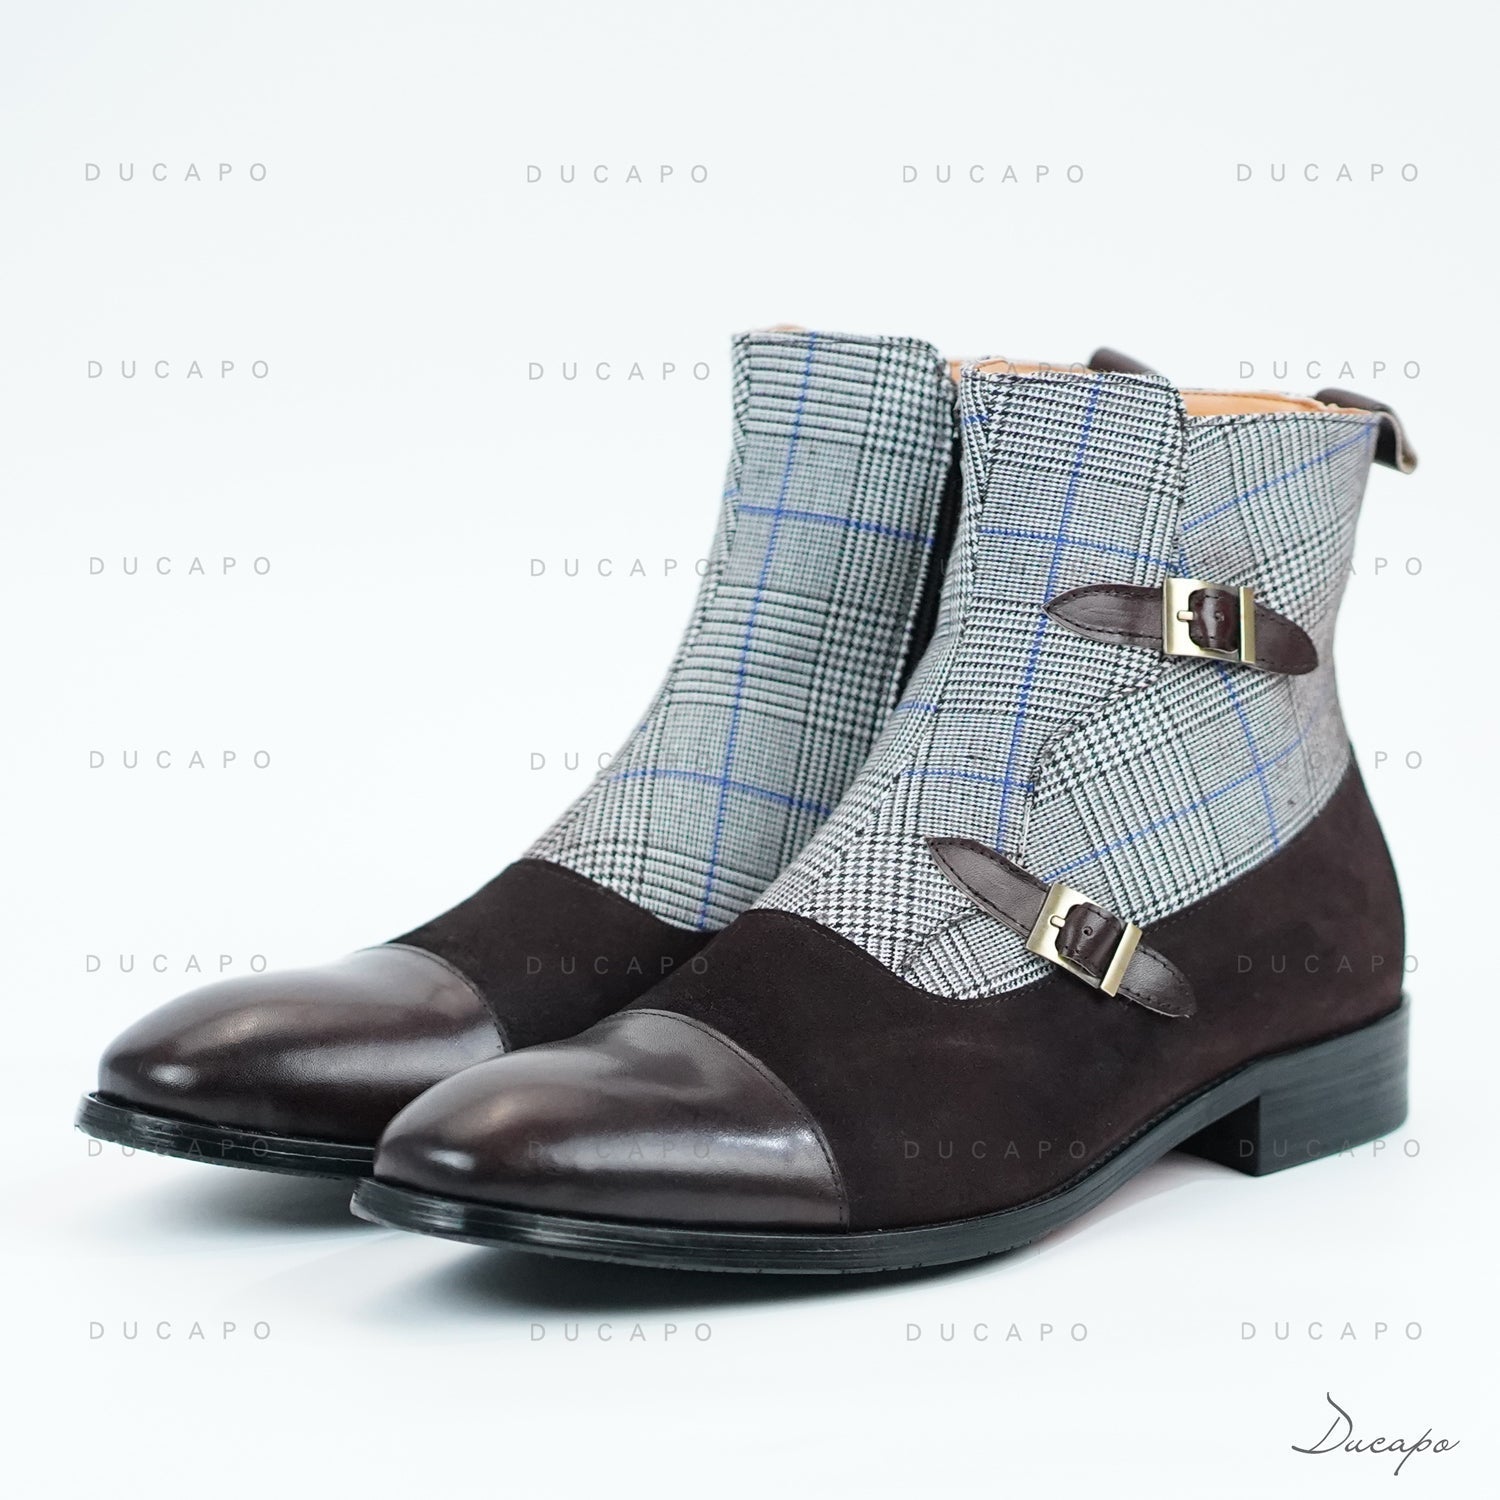 Ducapo Gentlemen Plaid Boots